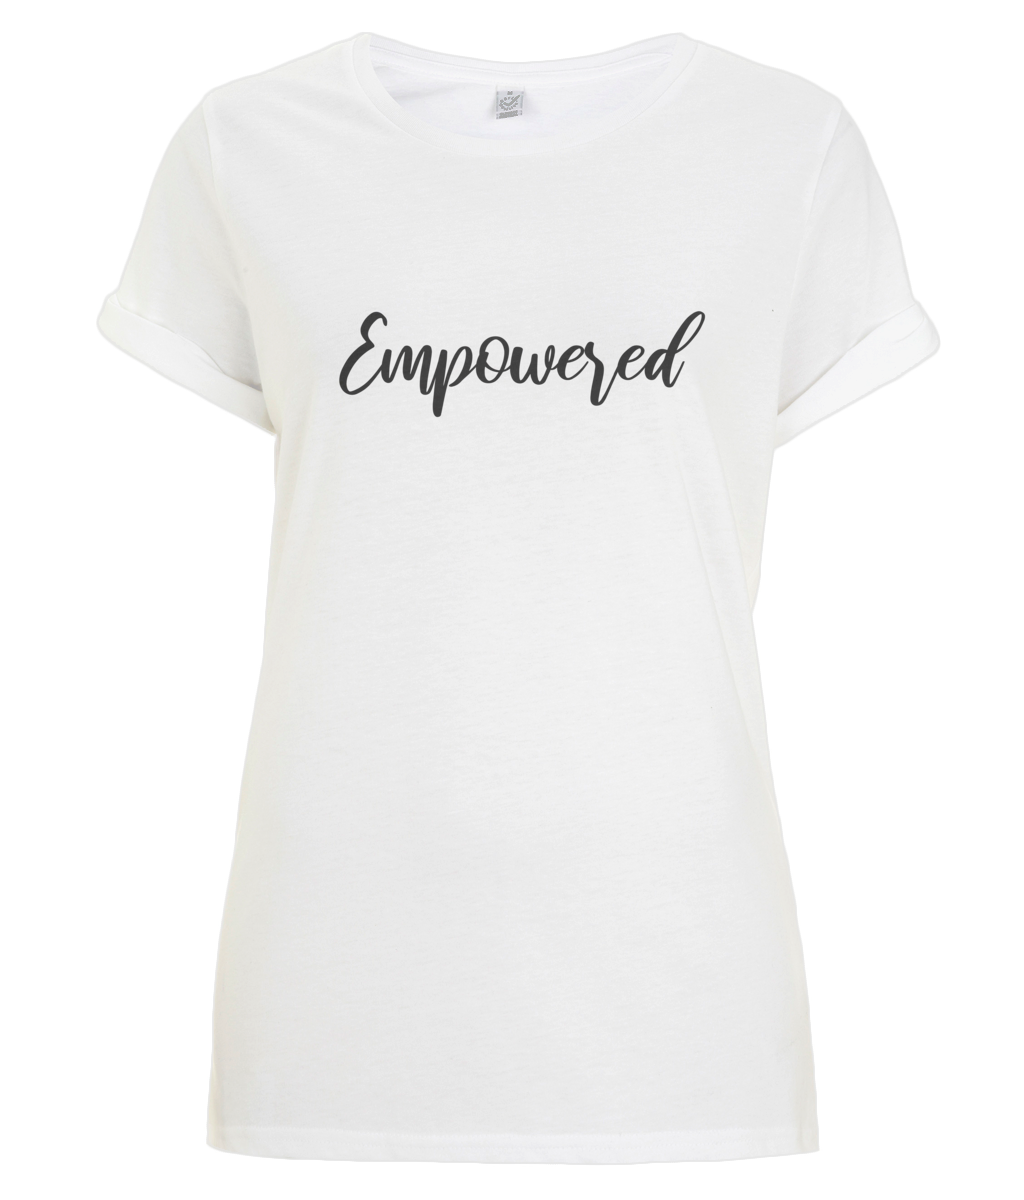 Empowered - organic Women's T-shirt - Black.